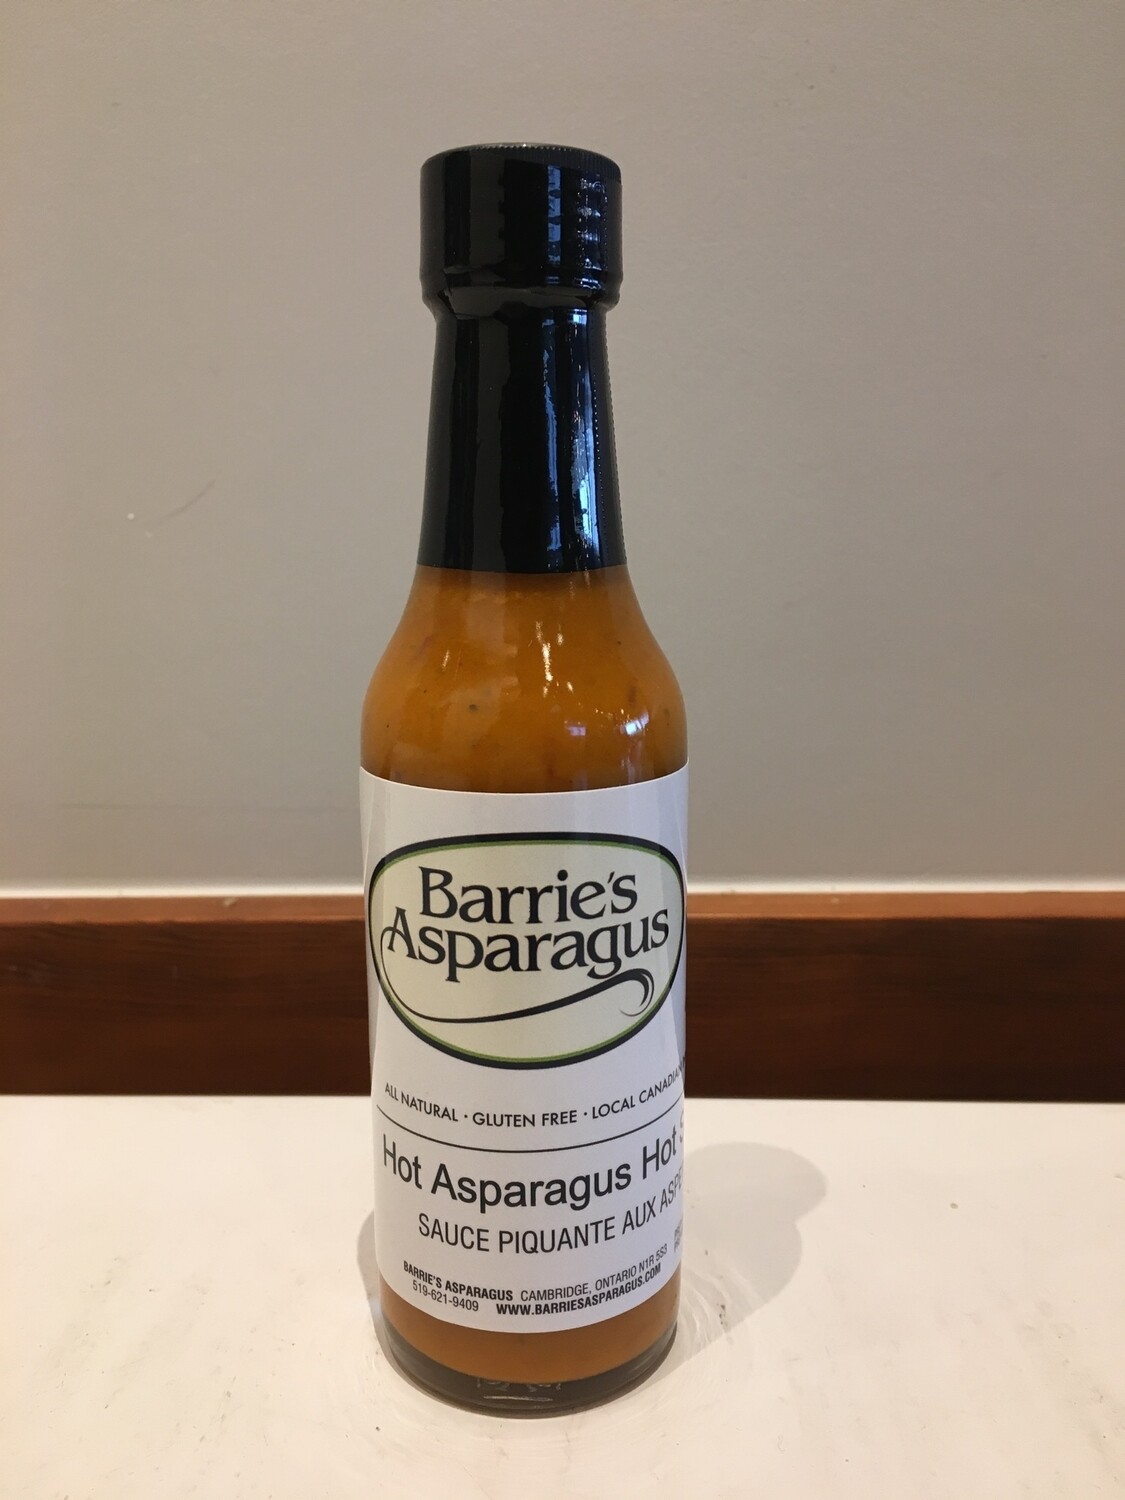 Hot Asparagus Hot Sauce - Barrie's Asparagus Farm LOCAL - 250ml